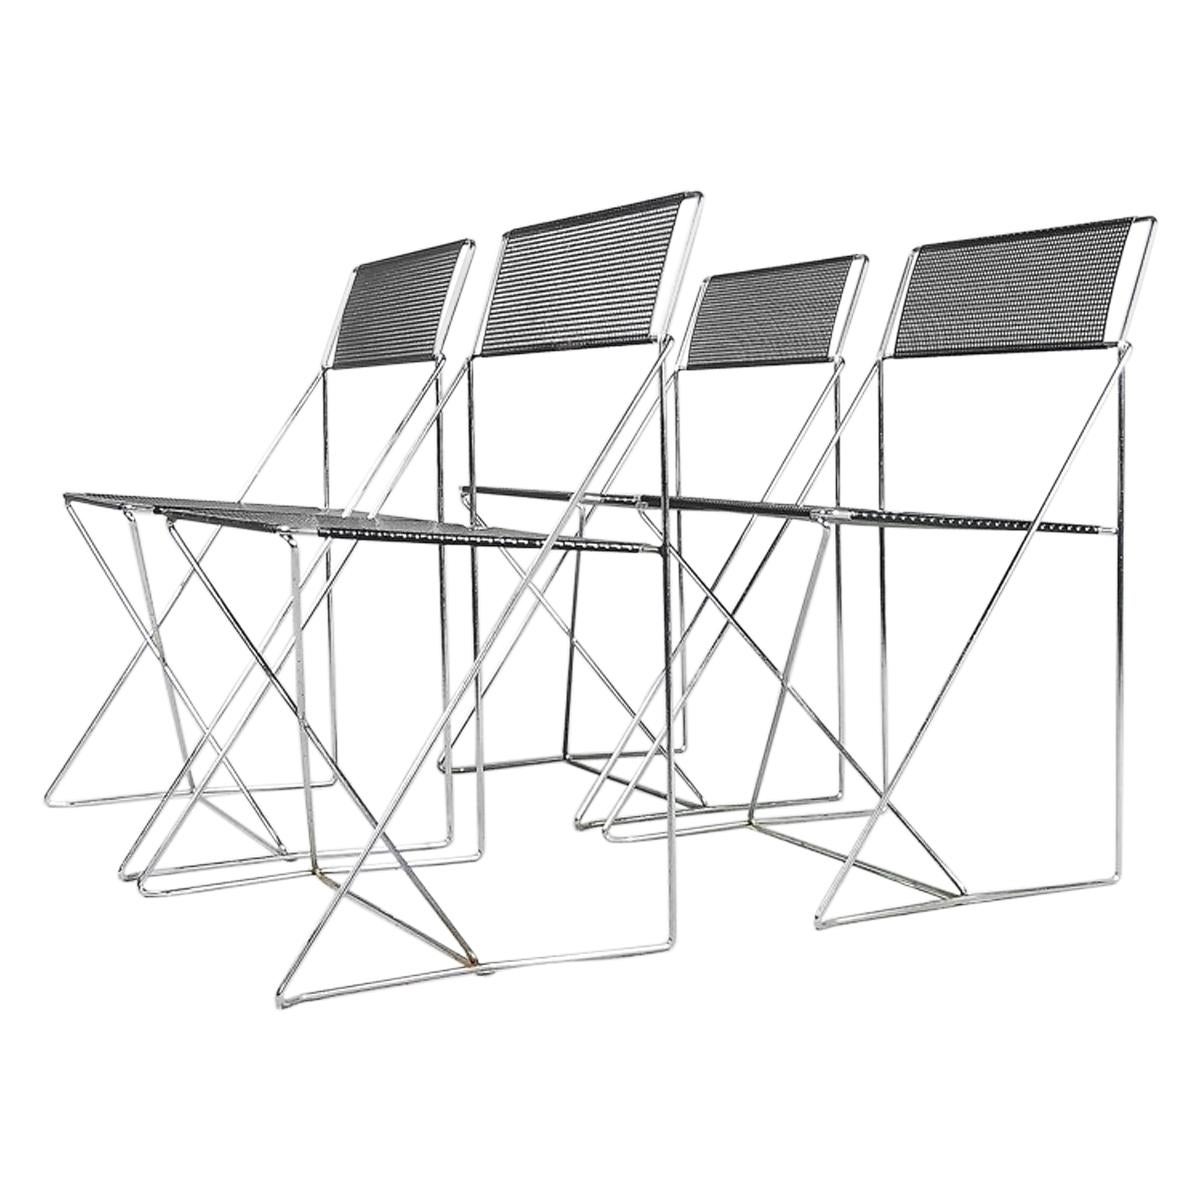 Minimalist Metal X-Line Chairs by Niels Jørgen Haugesen for Hybodan, 1970s For Sale